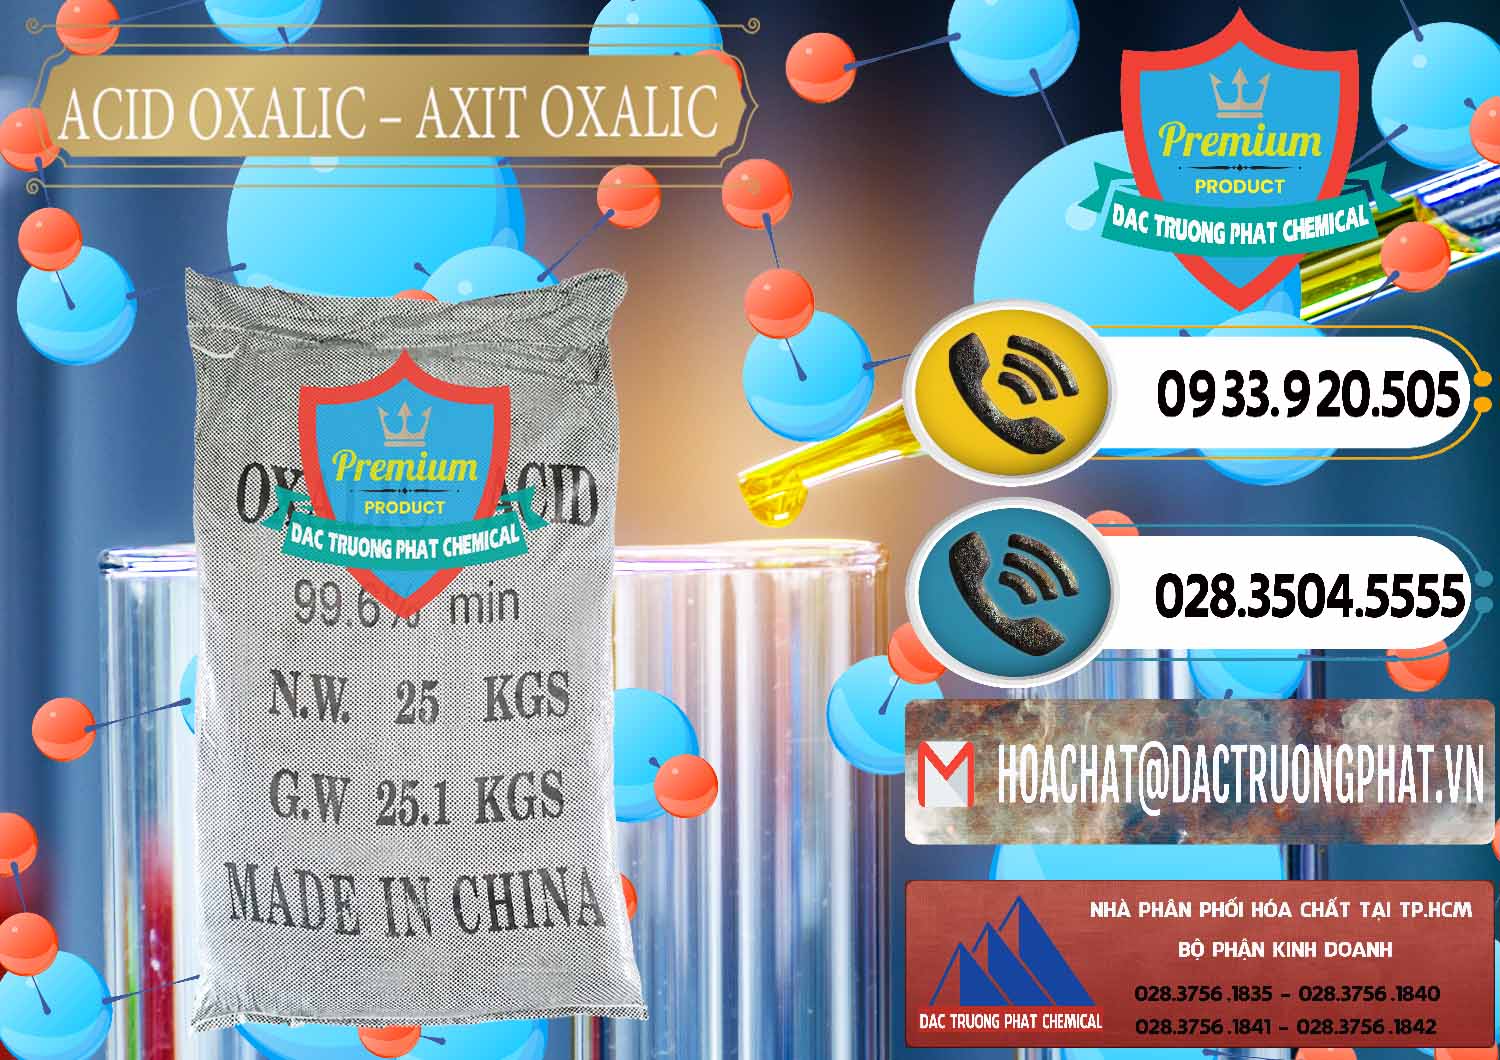 Nơi chuyên kinh doanh ( bán ) Acid Oxalic – Axit Oxalic 99.6% Trung Quốc China - 0014 - Công ty chuyên kinh doanh ( cung cấp ) hóa chất tại TP.HCM - hoachatdetnhuom.vn